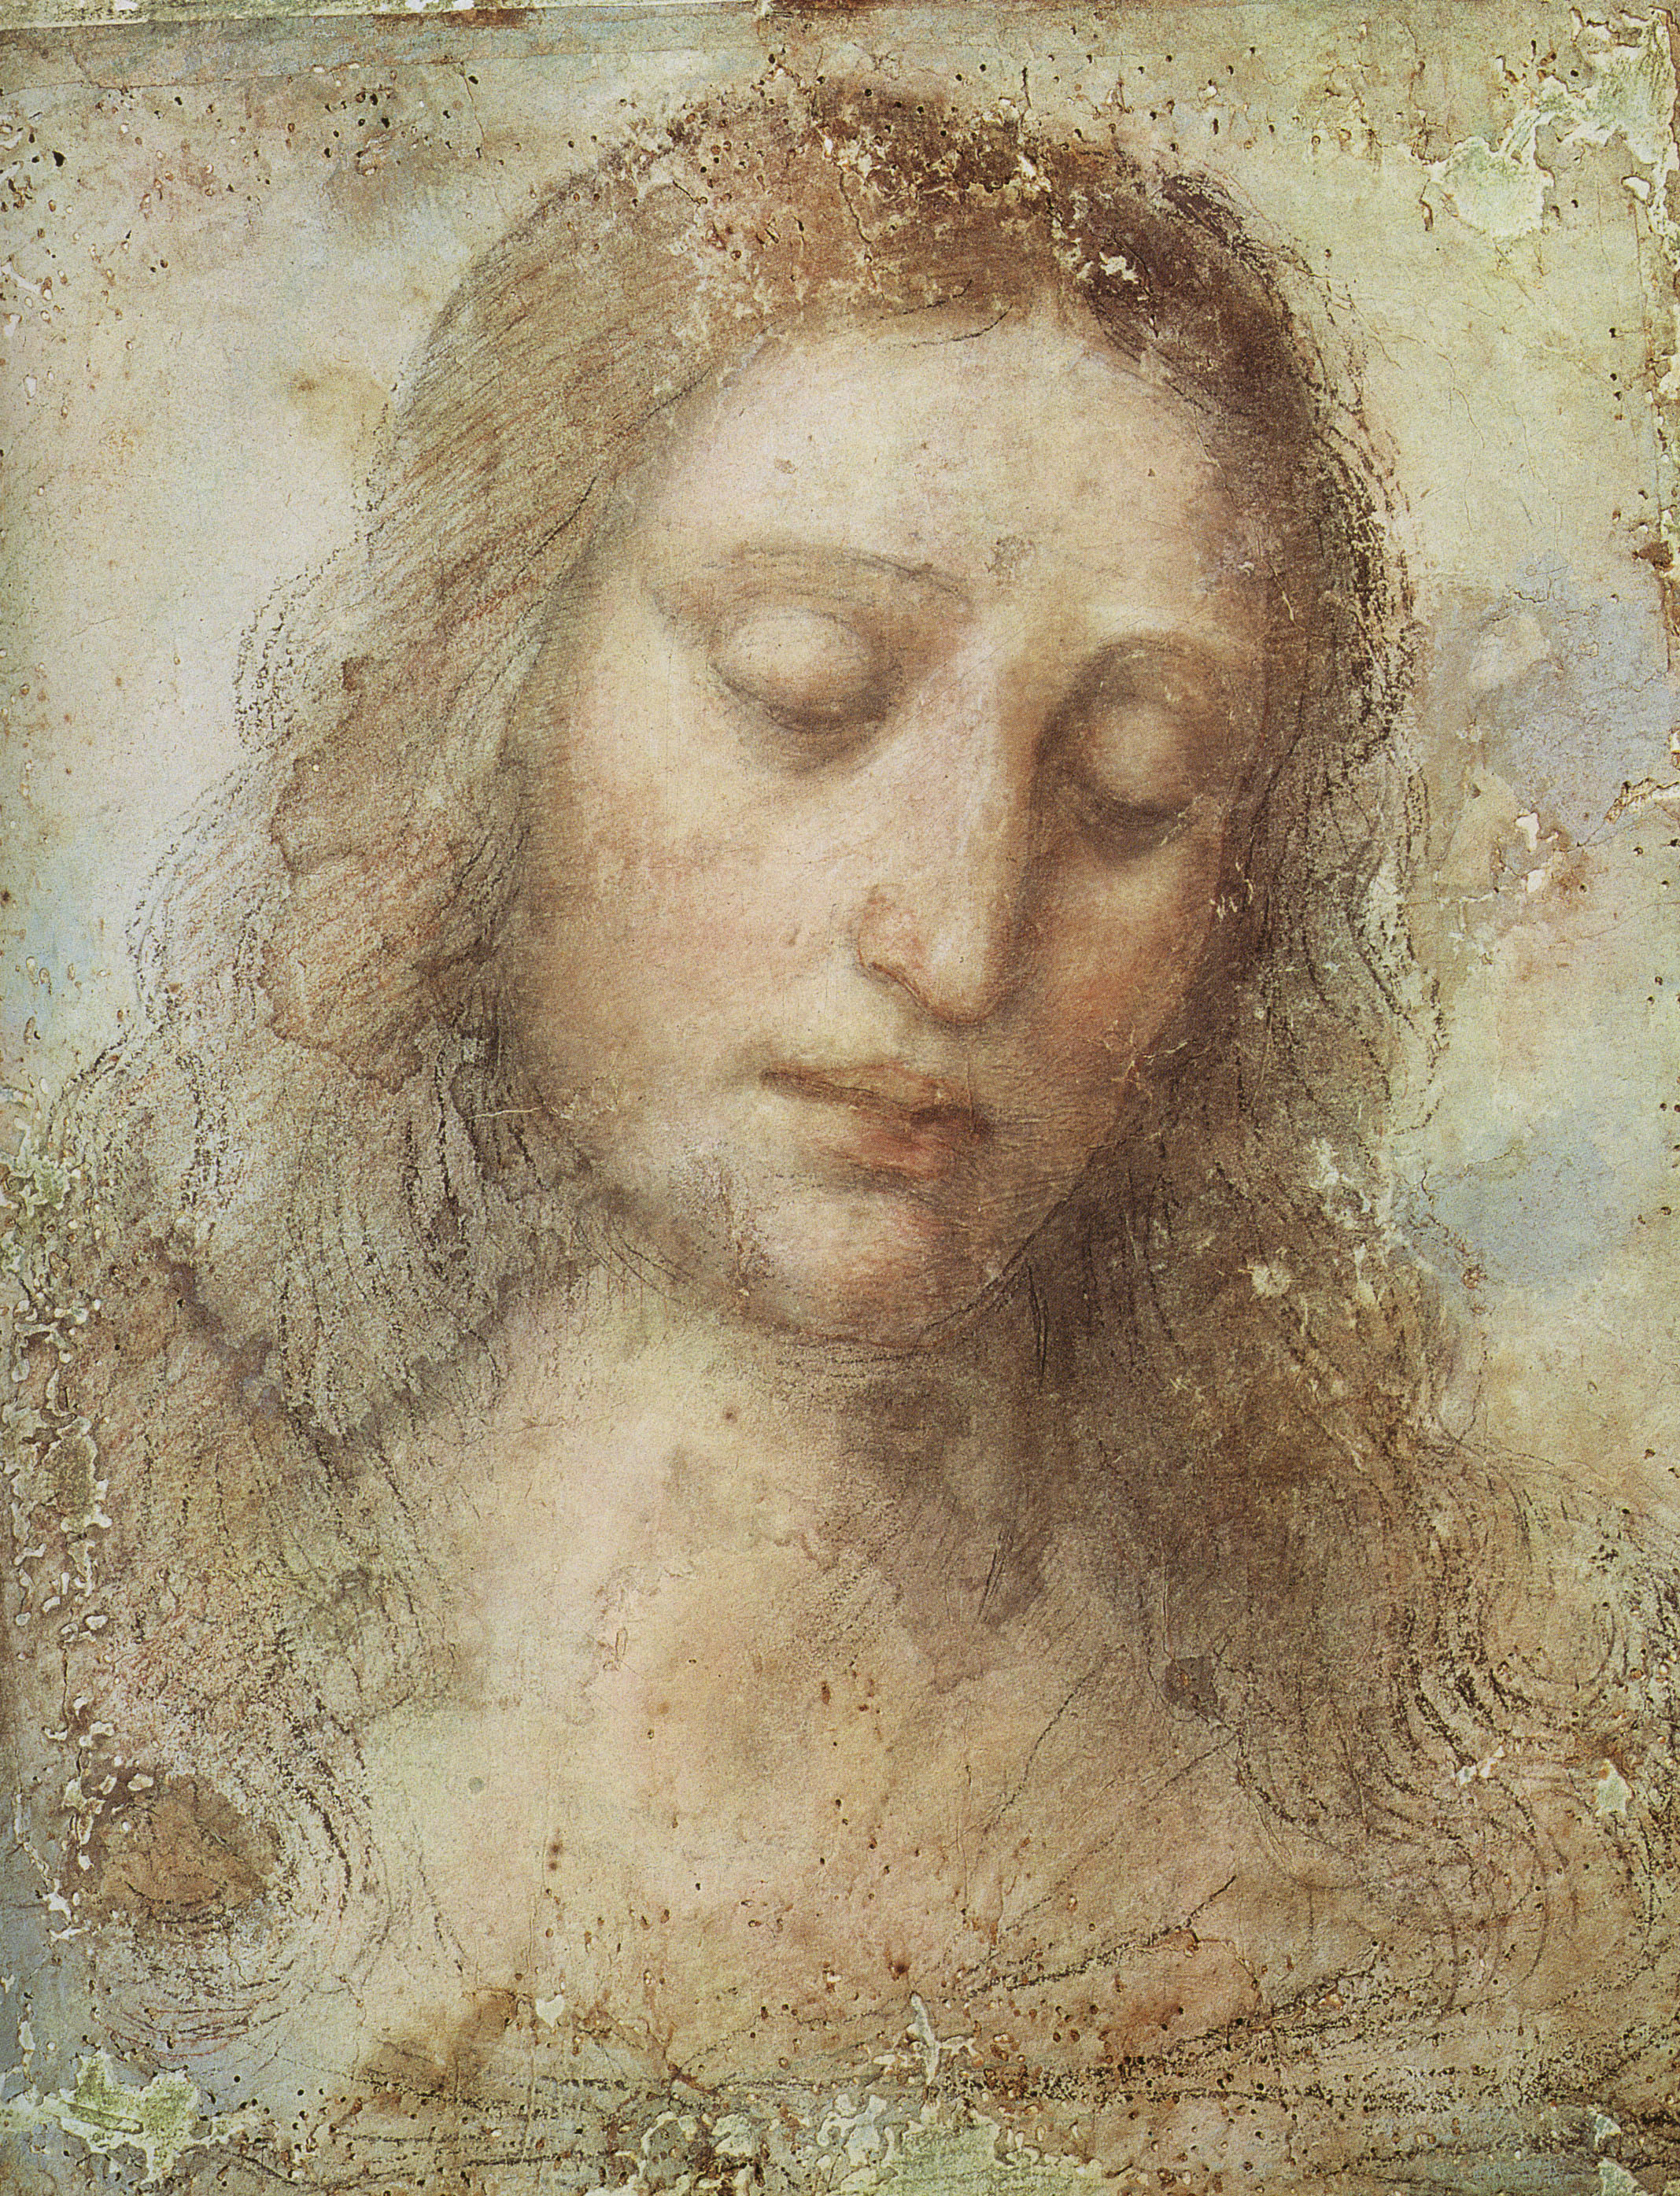 基督的头部画像 by 列奥纳多 ·  达 · 芬奇 - 1495 - - 